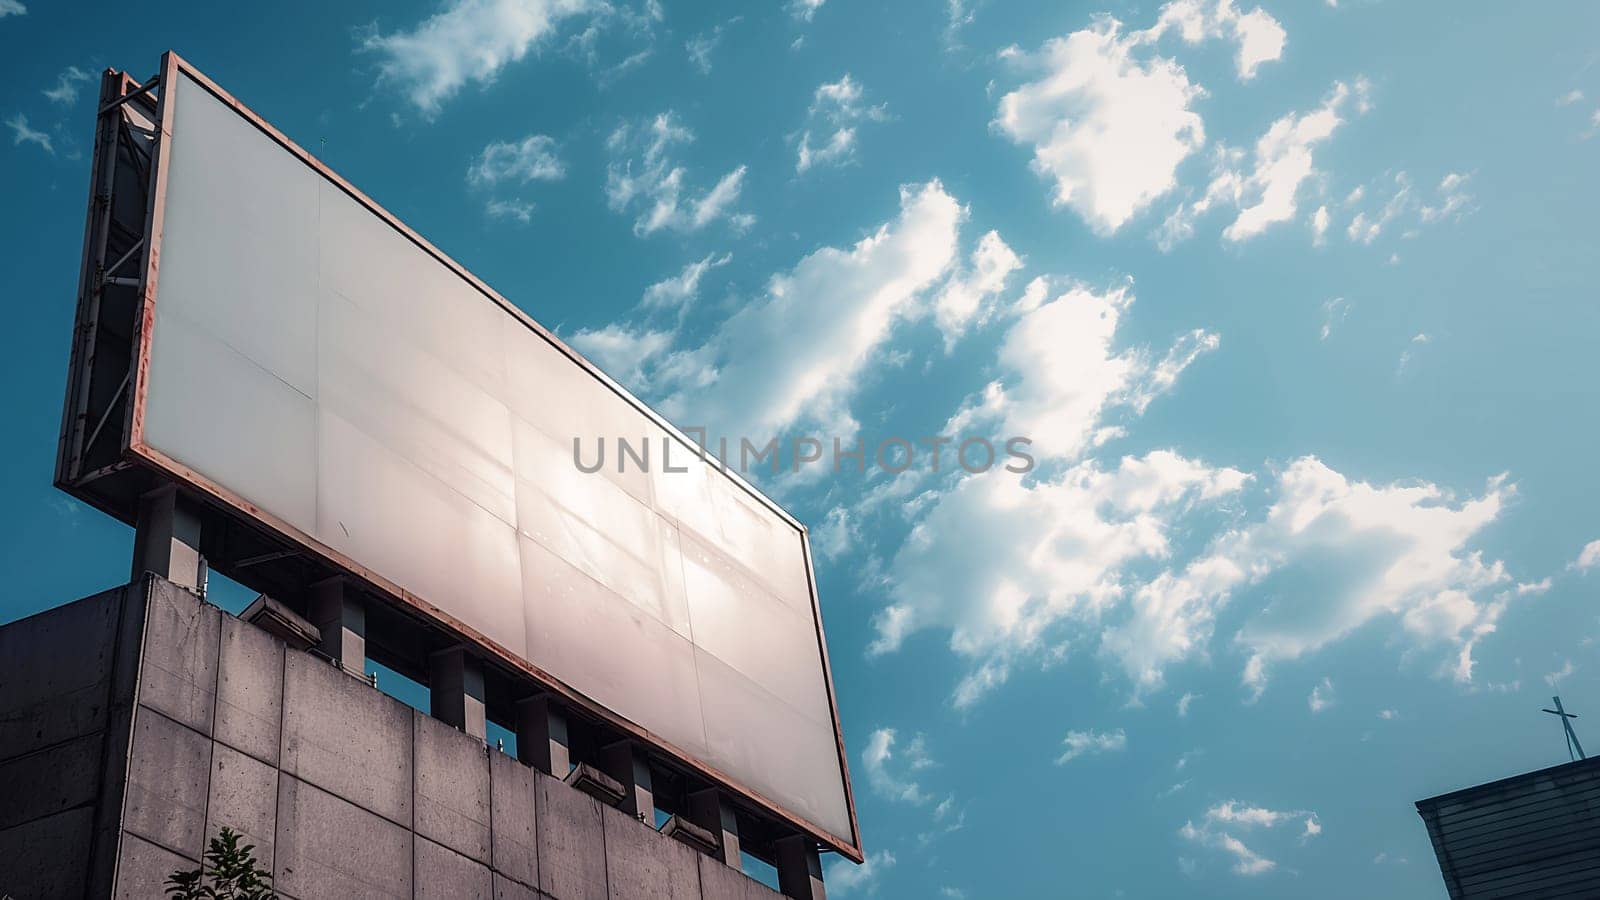 Blank billboard on urban building against clear blue sky by chrisroll